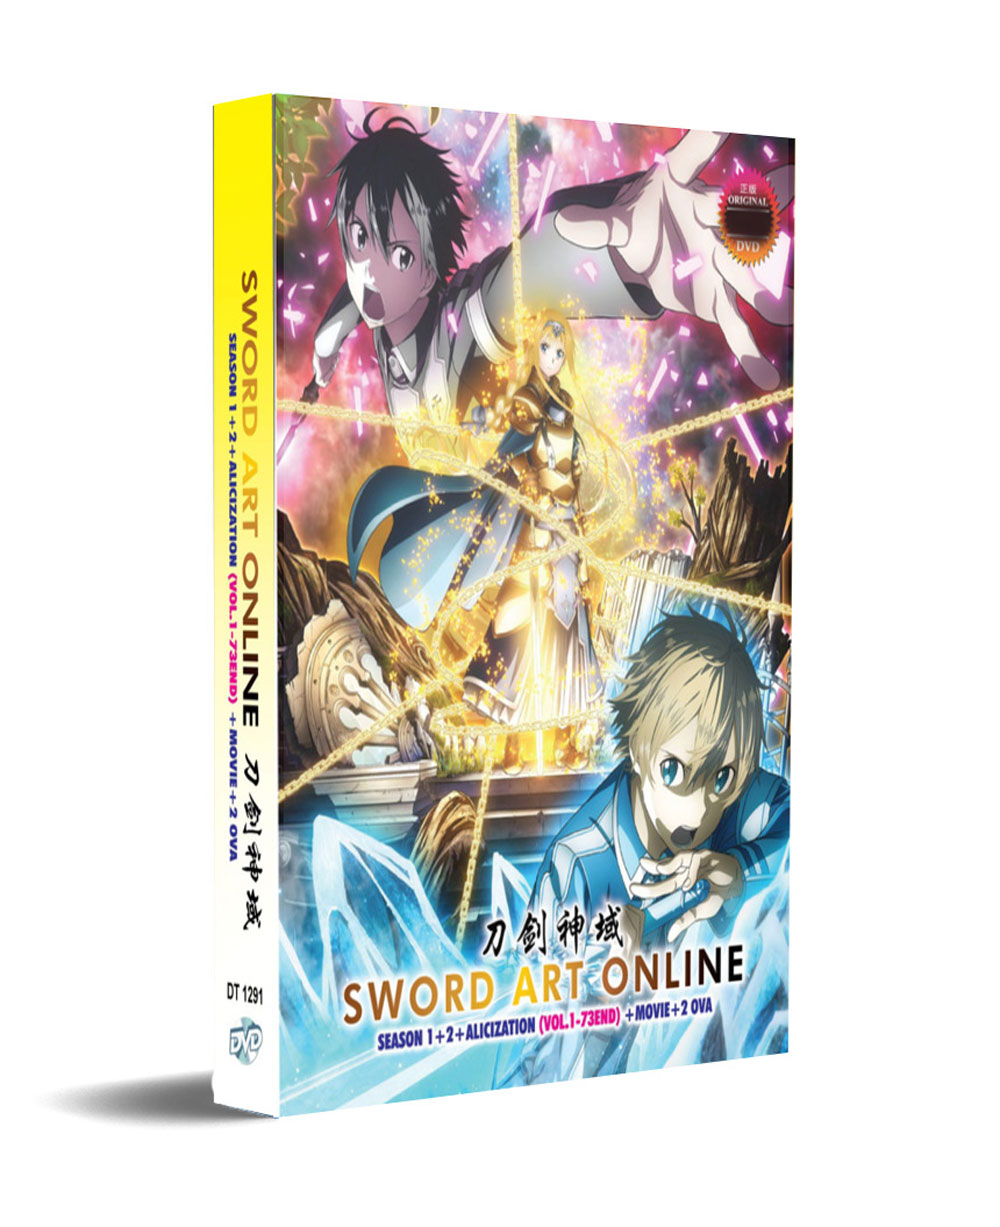 Sword Art Online Season 1+2+Alicization + Movie + 2 OVA (DVD) (2012-2018) アニメ